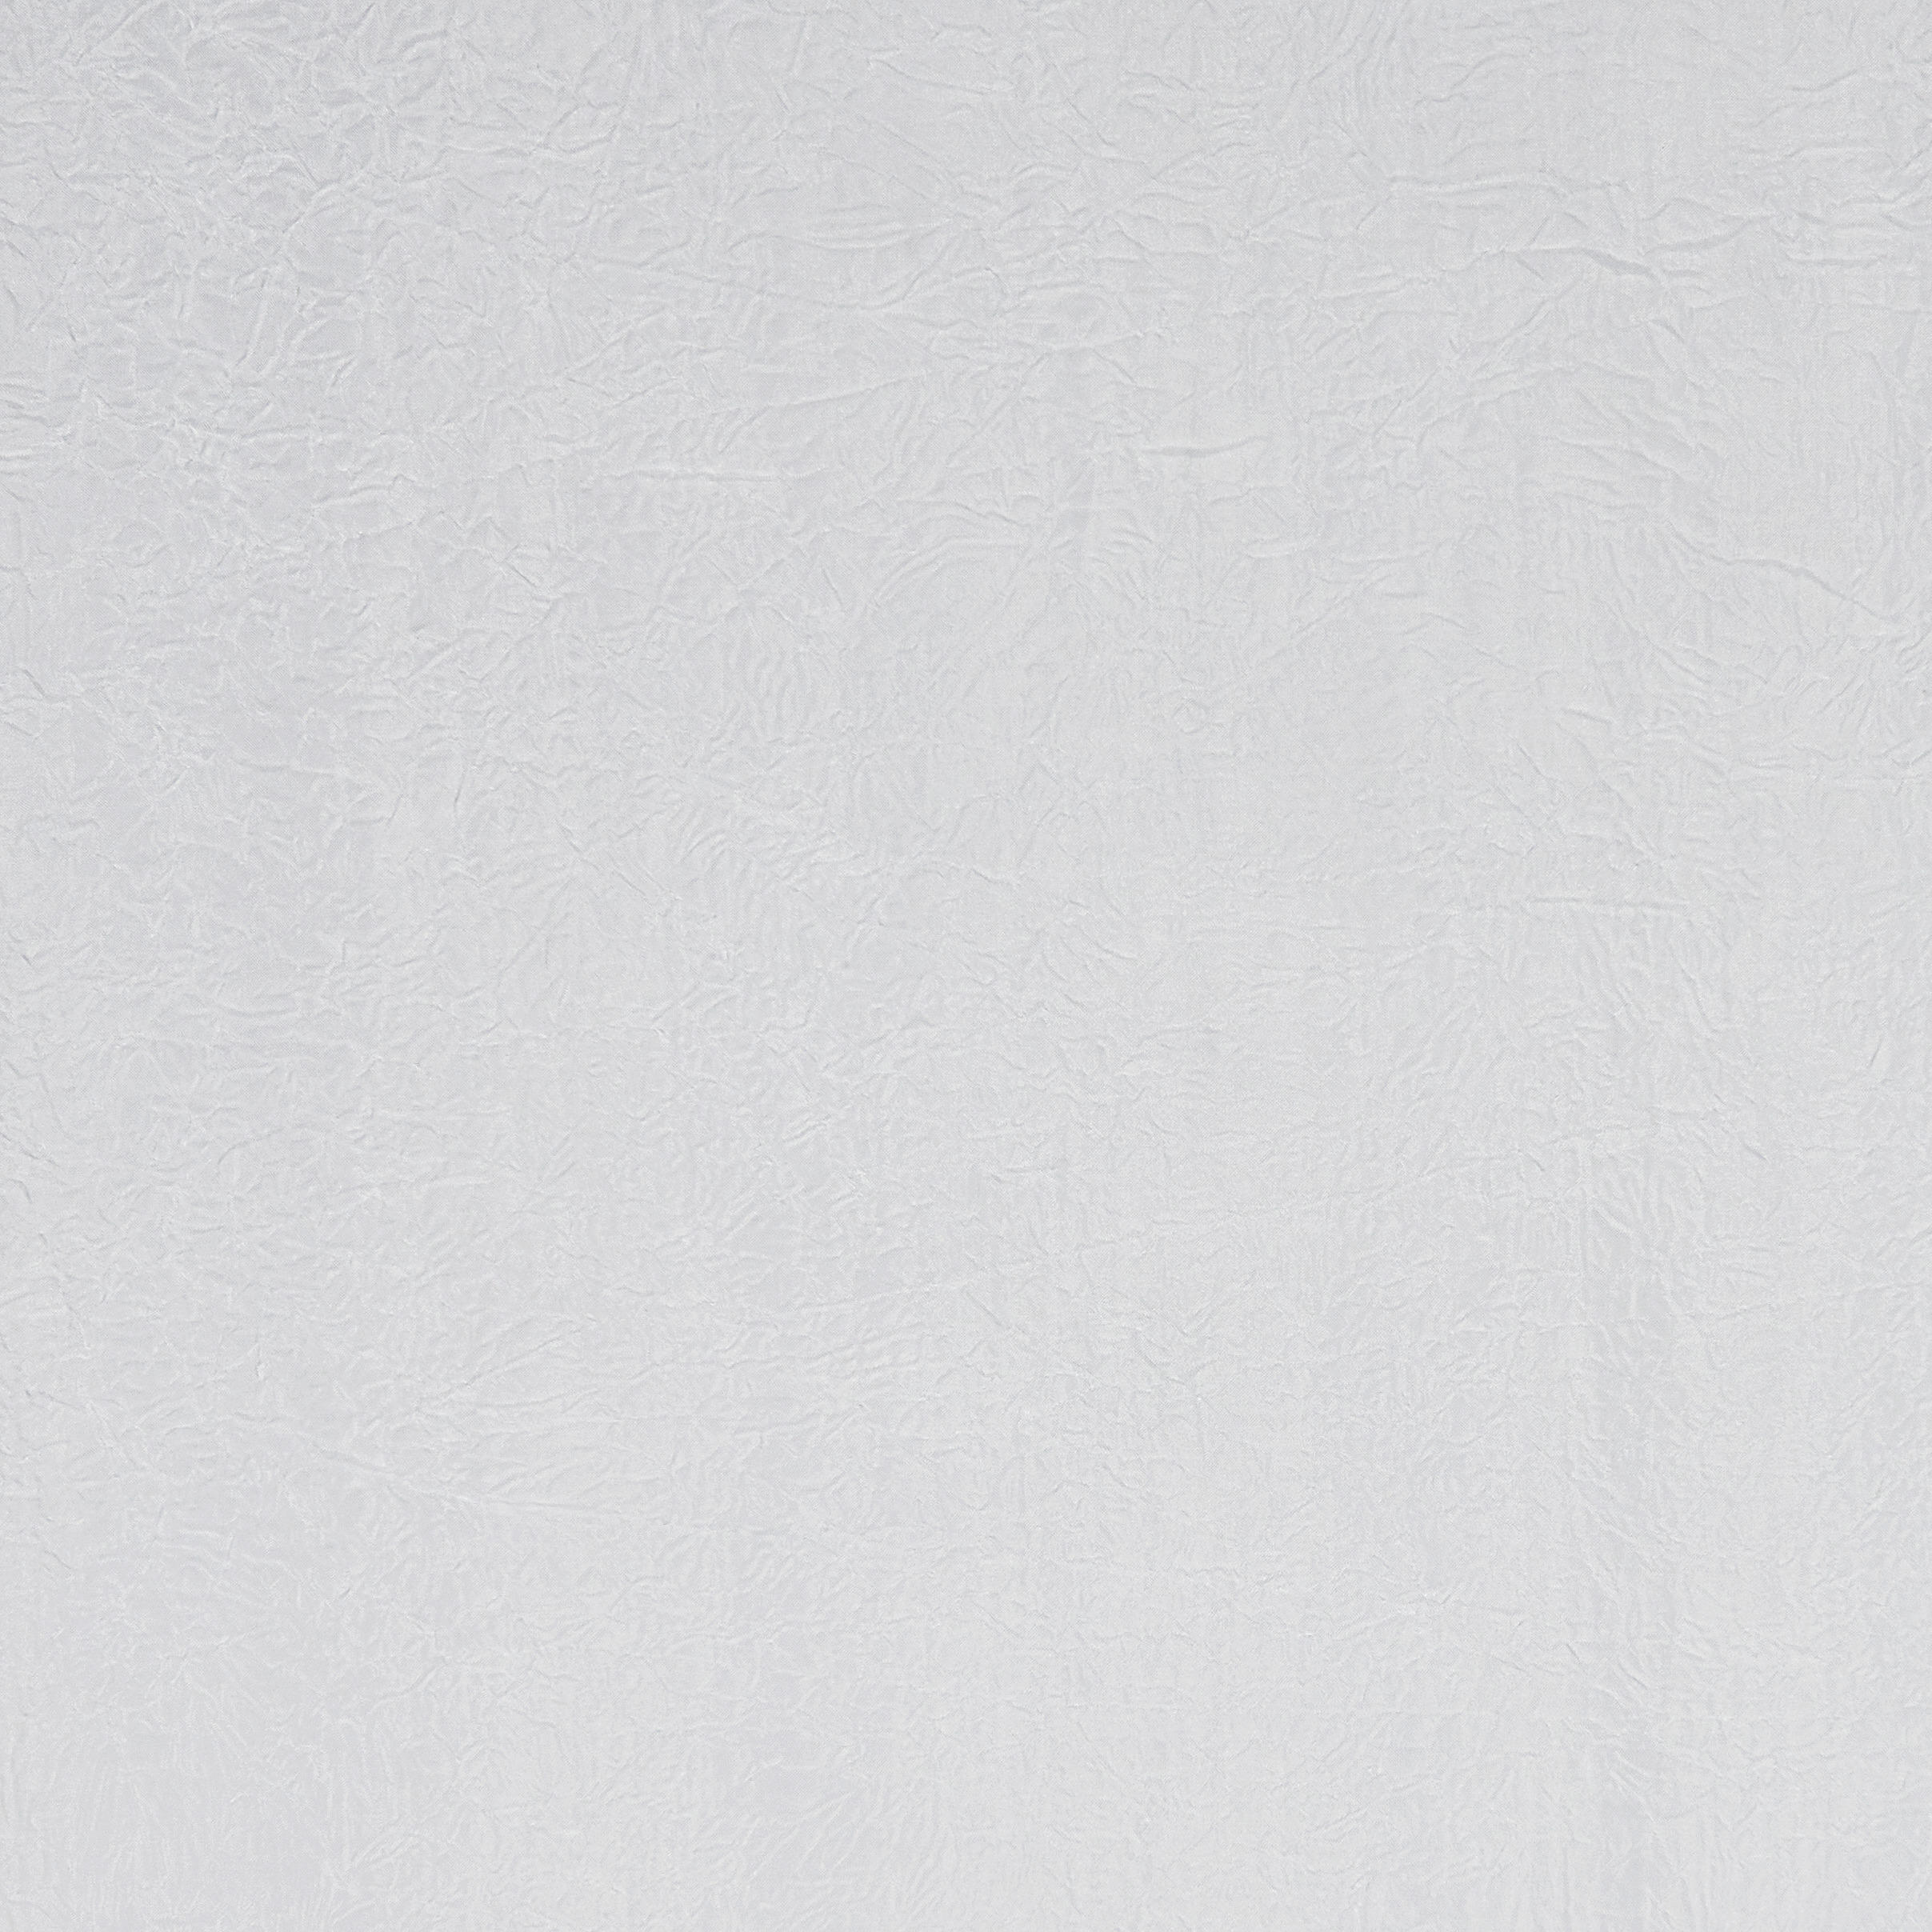 FERTIGVORHANG CANTERBURY transparent 135/245 cm   - Naturfarben, Basics, Textil (135/245cm) - Esposa